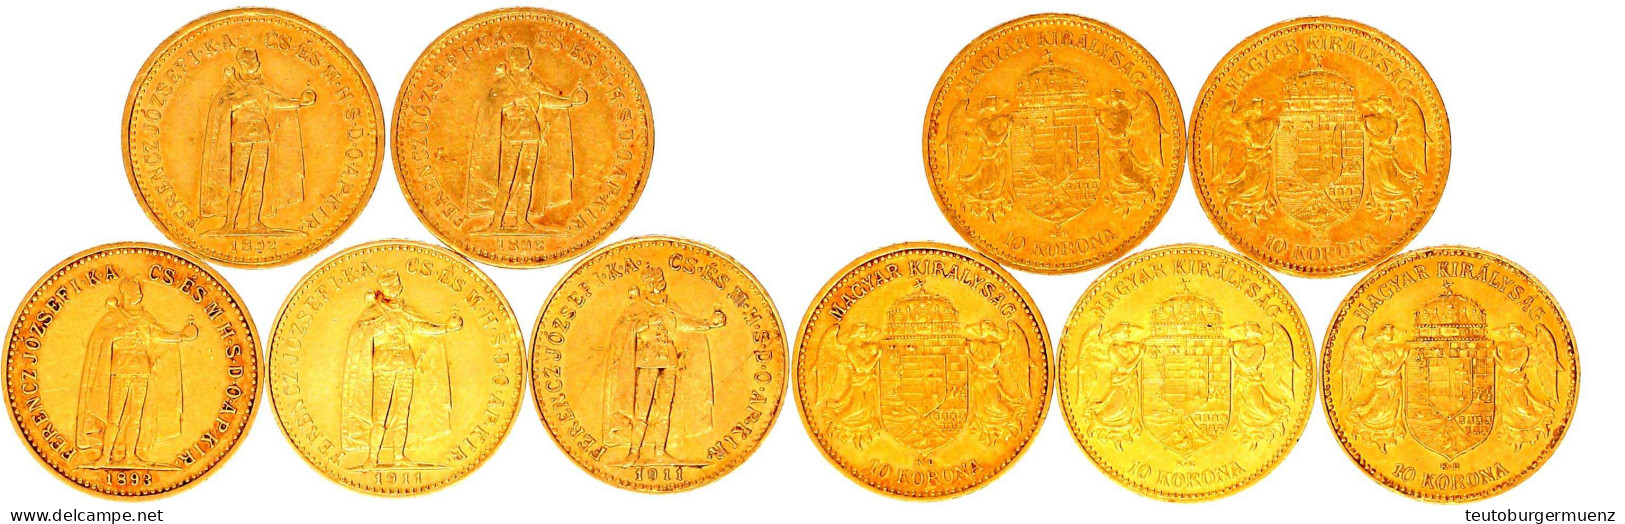 5 X 10 Kronen Ab 1892 Stehender König, Ausgabe Für Ungarn. Die Jahre 1892, 2 X 1893 Und 2 X 1911. Je 3,39 G. 900/1000. S - Monedas En Oro